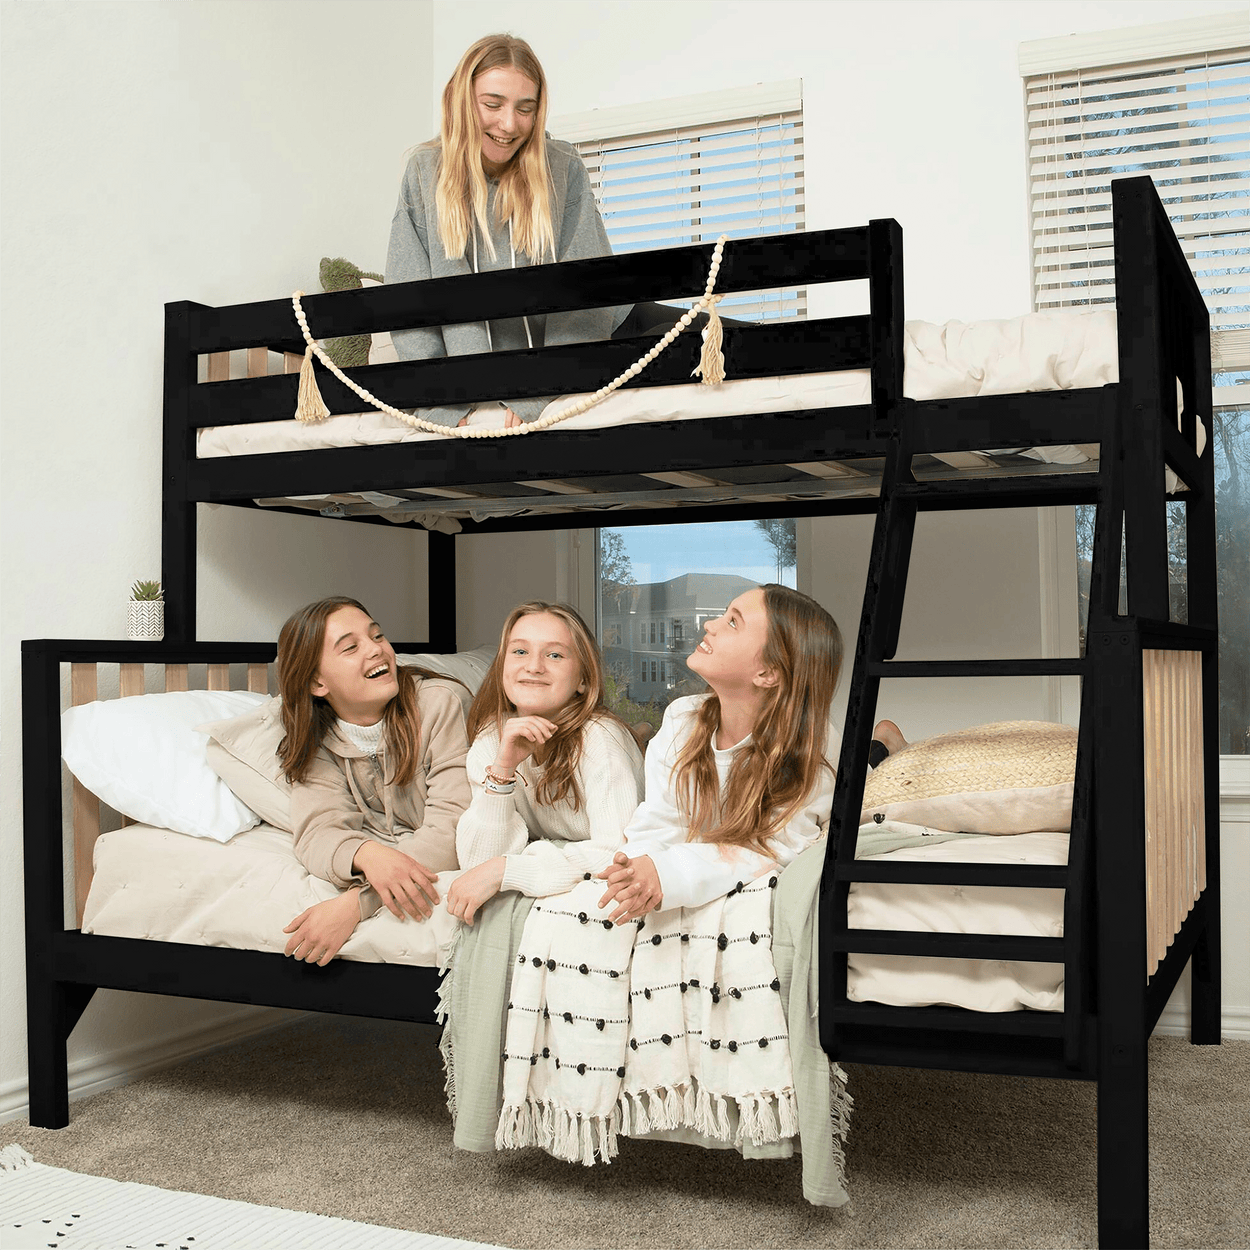 210231-272 : Bunk Beds Scandinavian Twin over Full Bunk Bed, Black/Blonde